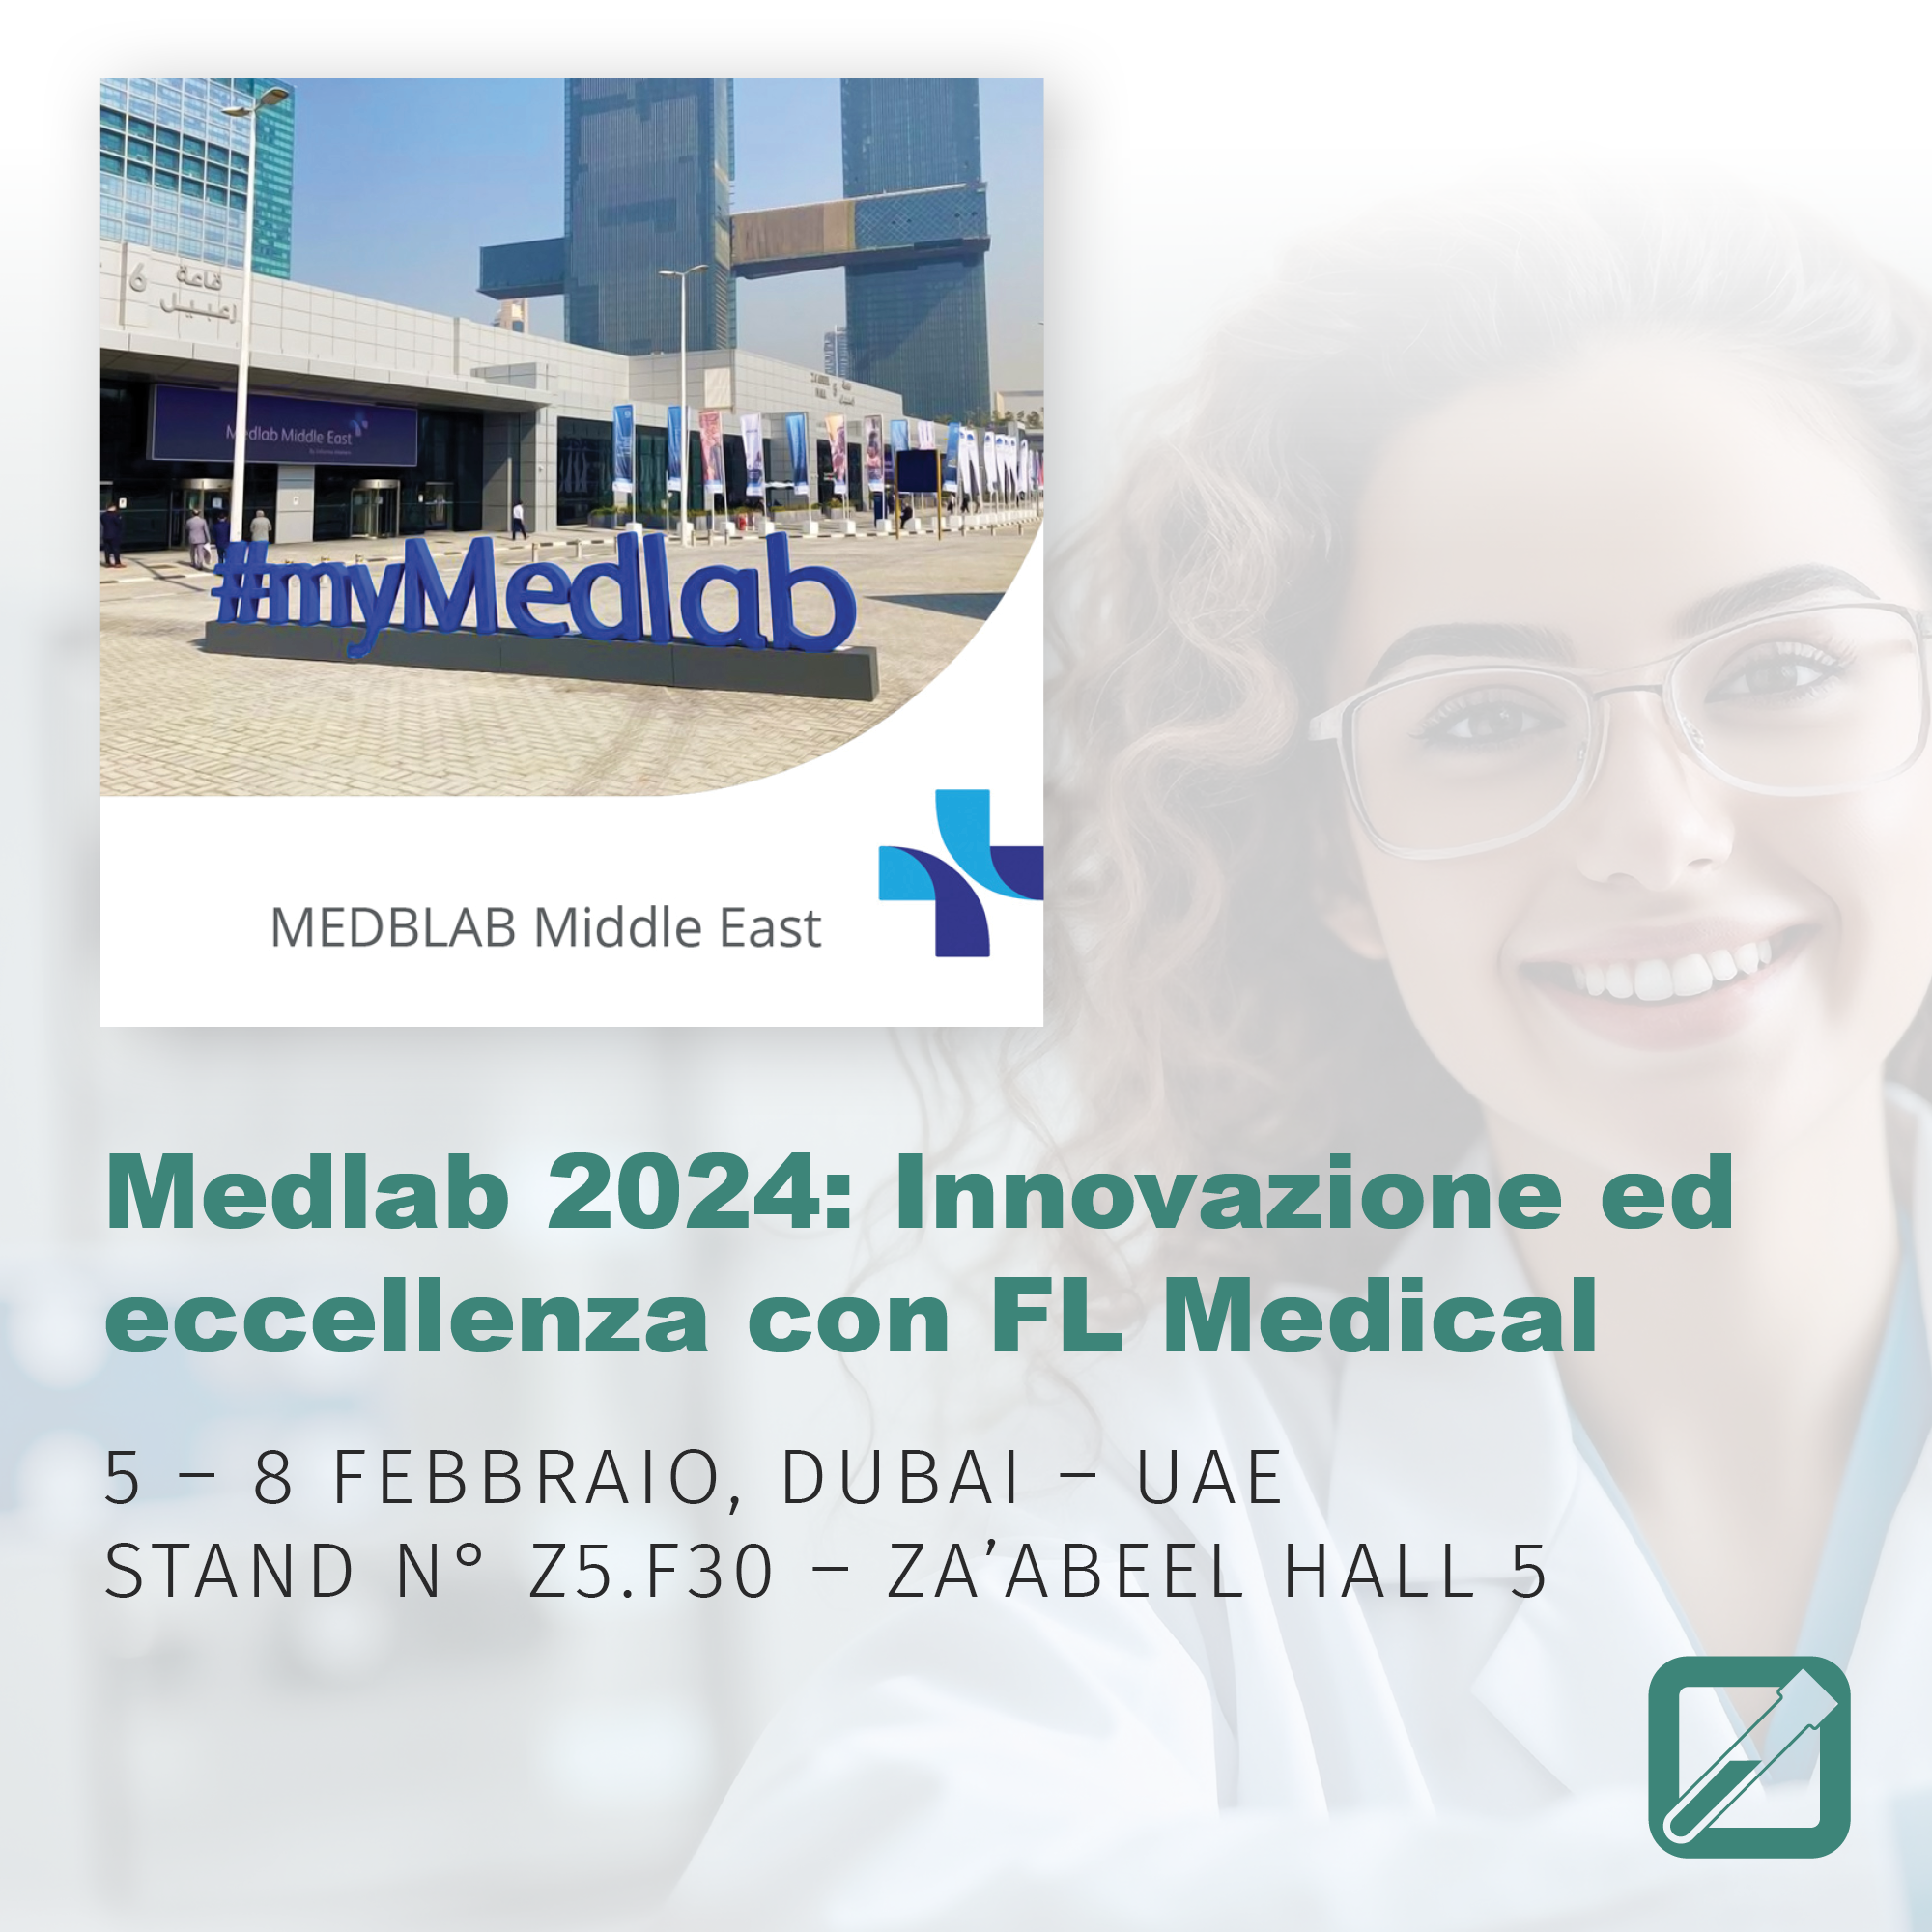 Medlab 2024: FL Medical, eccellenza e innovazione